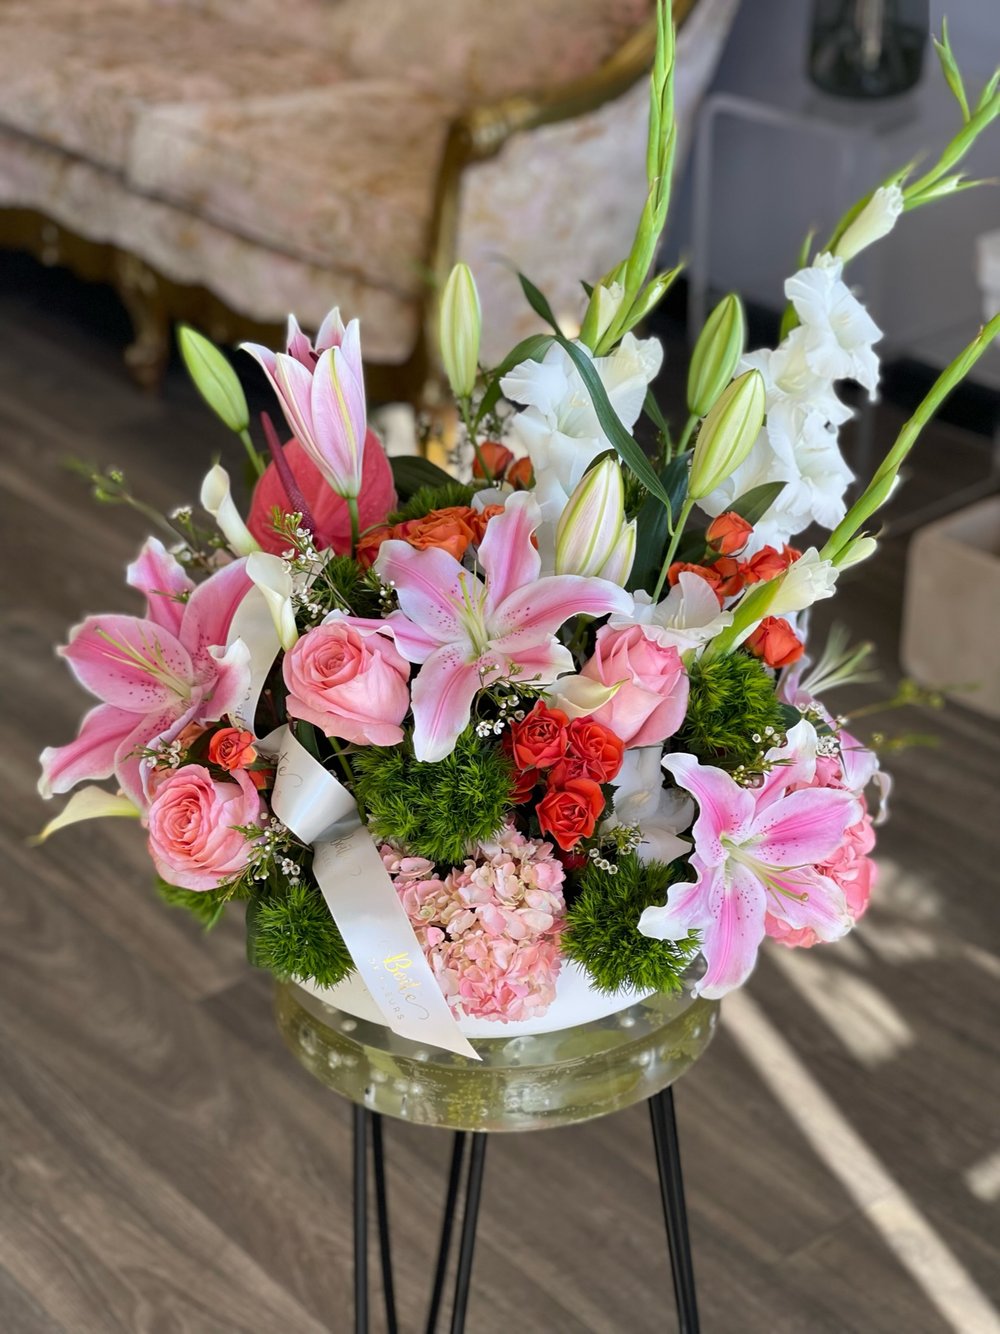 Florist's Choice Boîte — Boite De Fleurs AZ